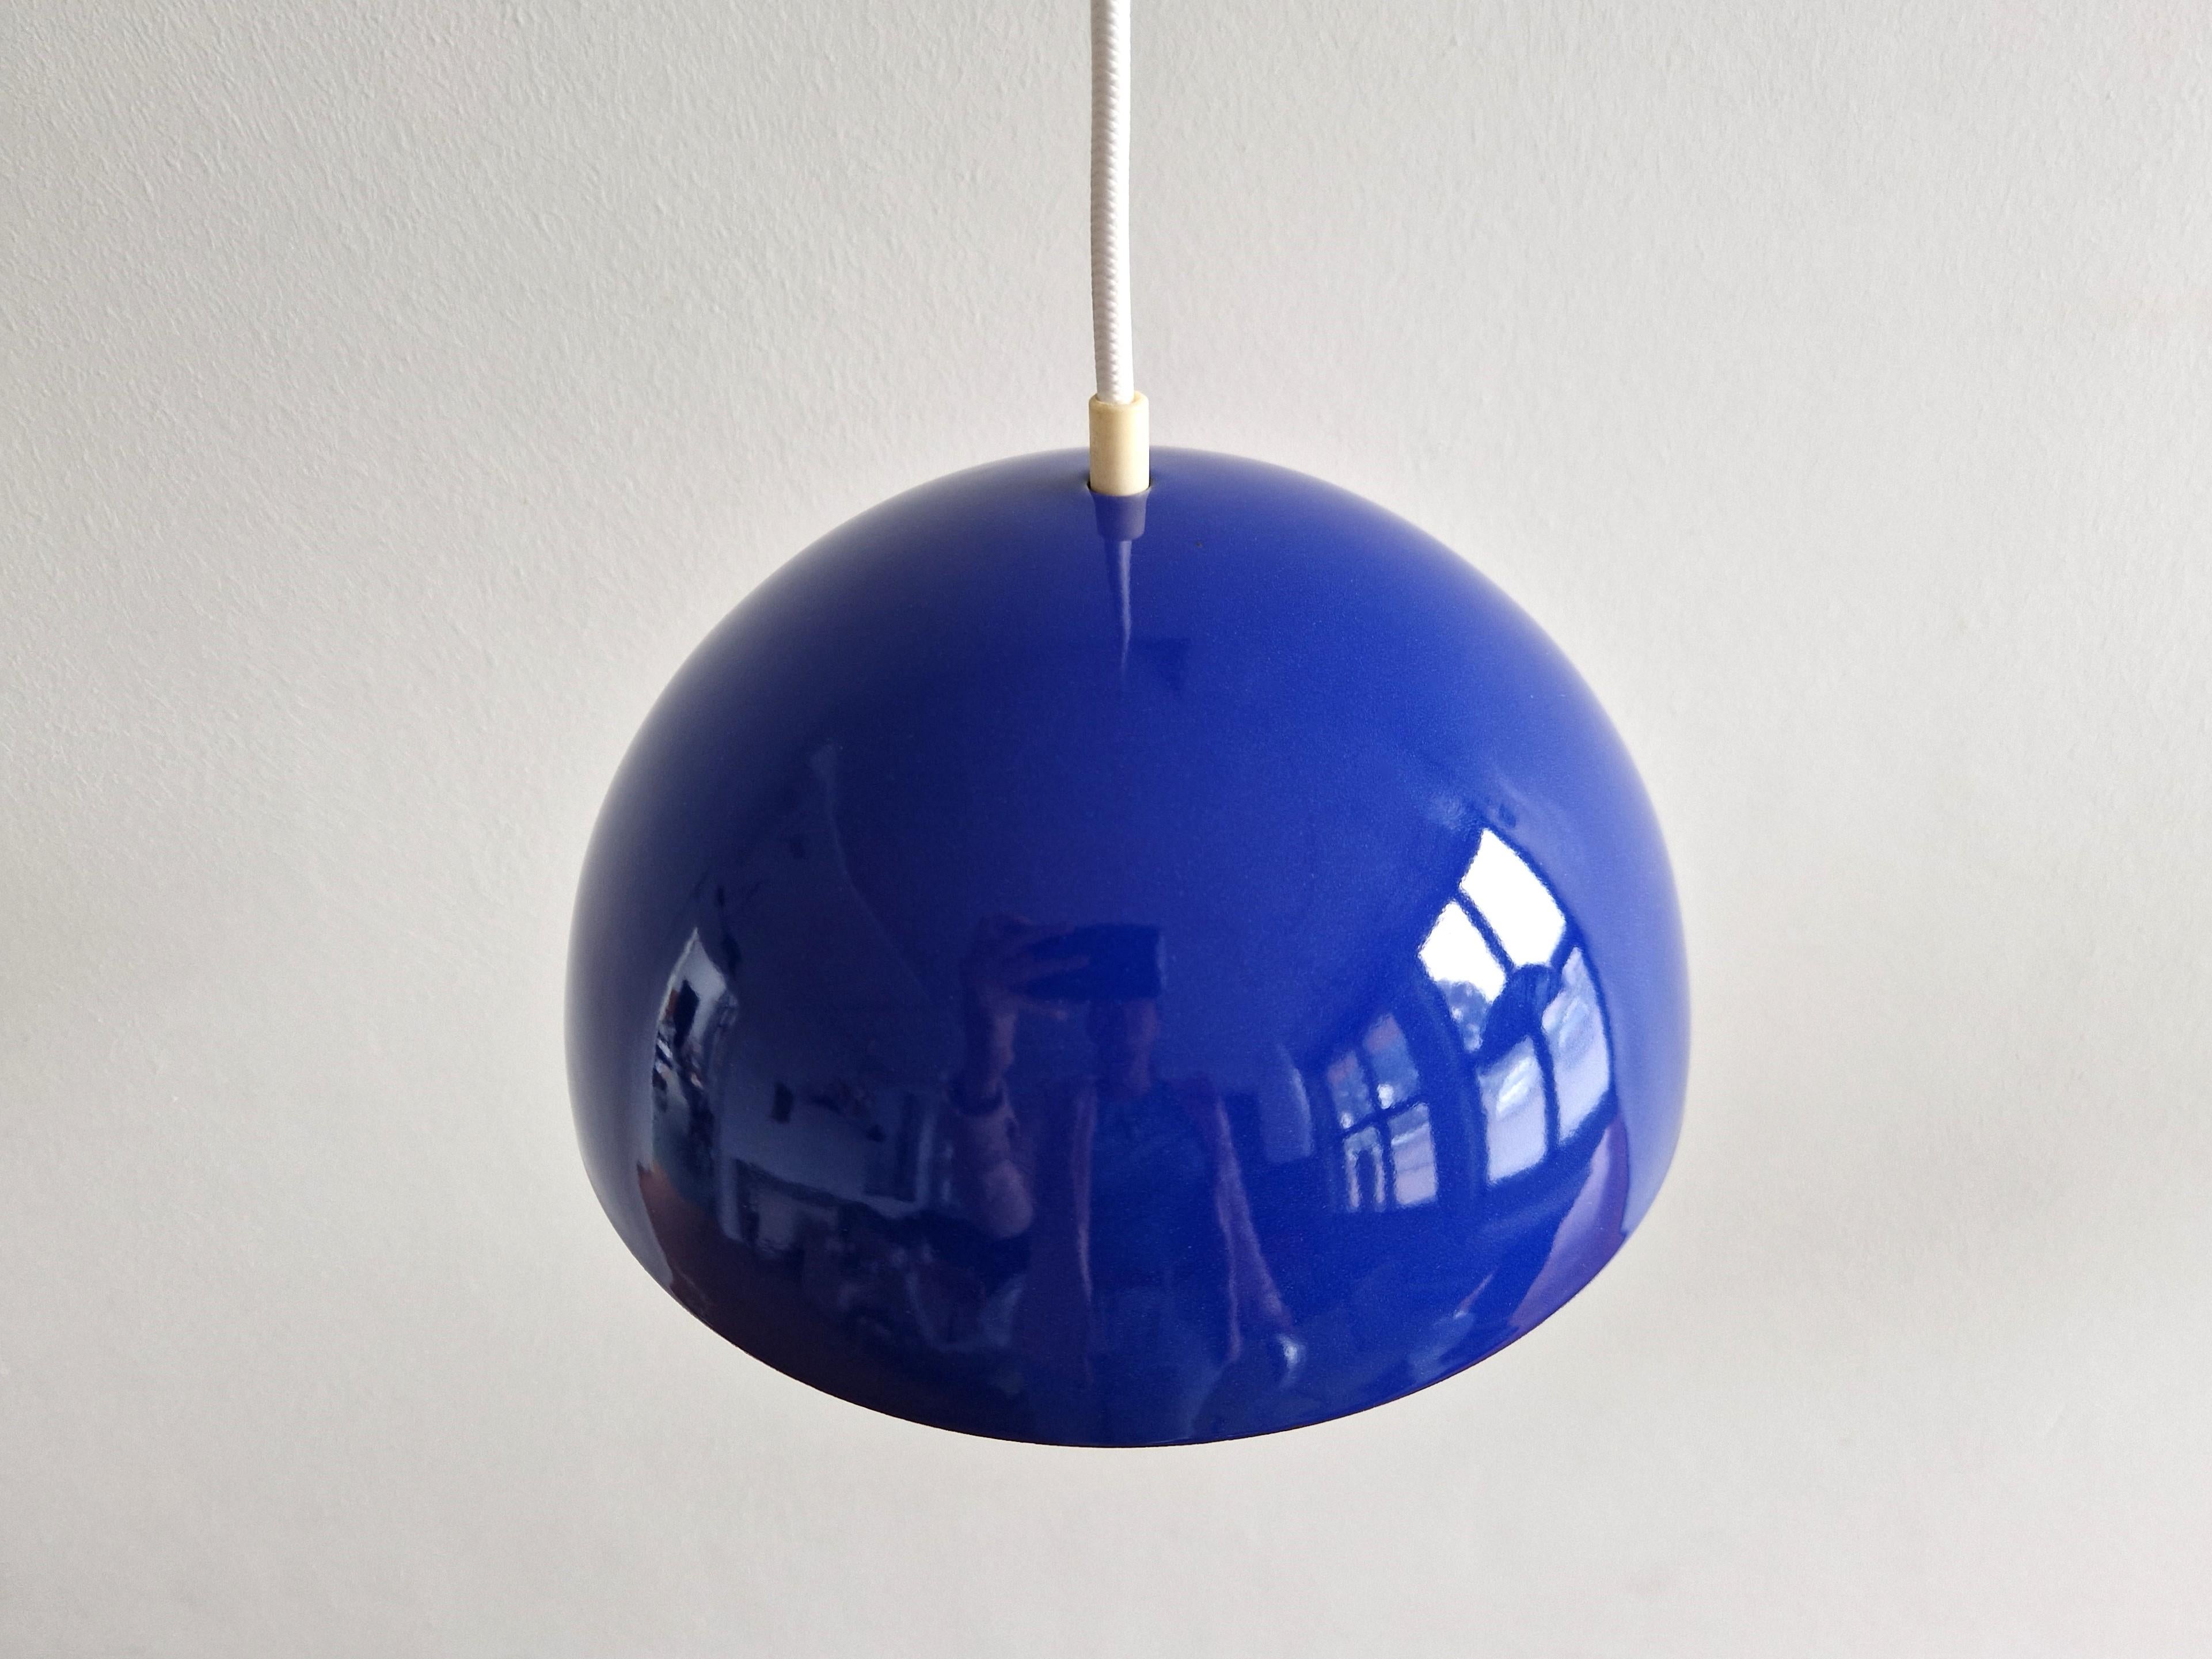 Mid-Century Modern Blue Flowerpot pendant lamp by Verner Panton for Louis Poulsen, Denmark 1968 For Sale